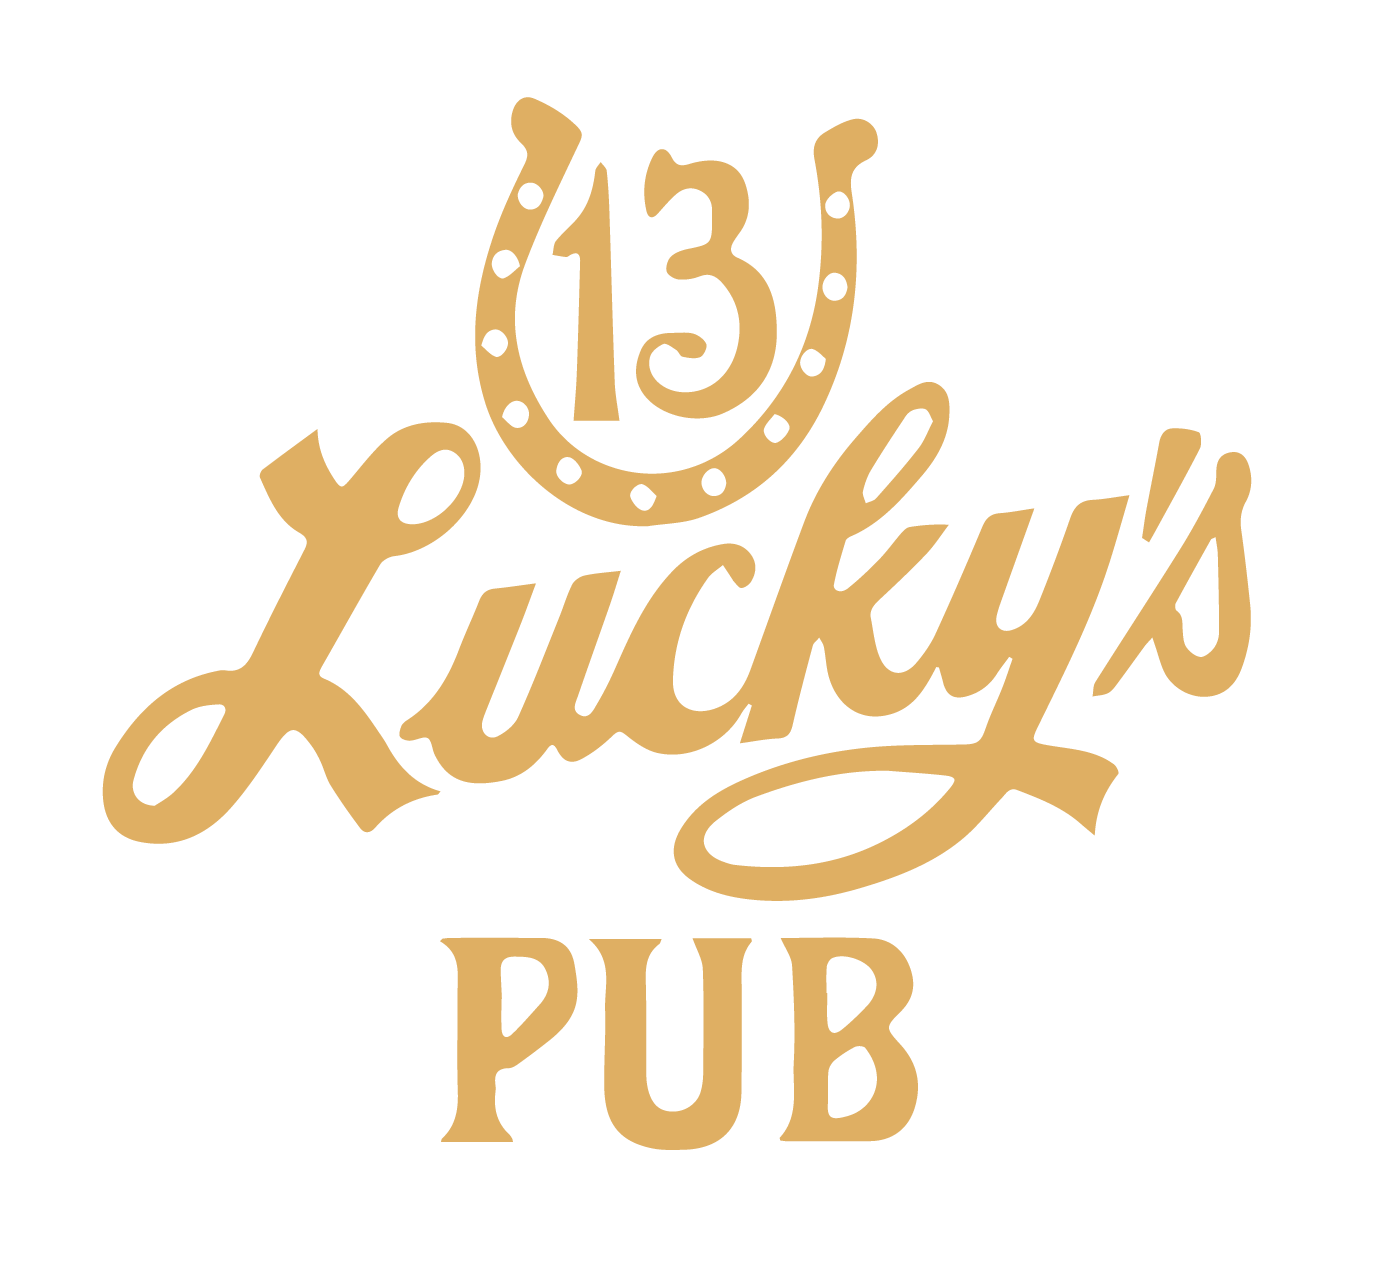 Lucky S 13 Pub